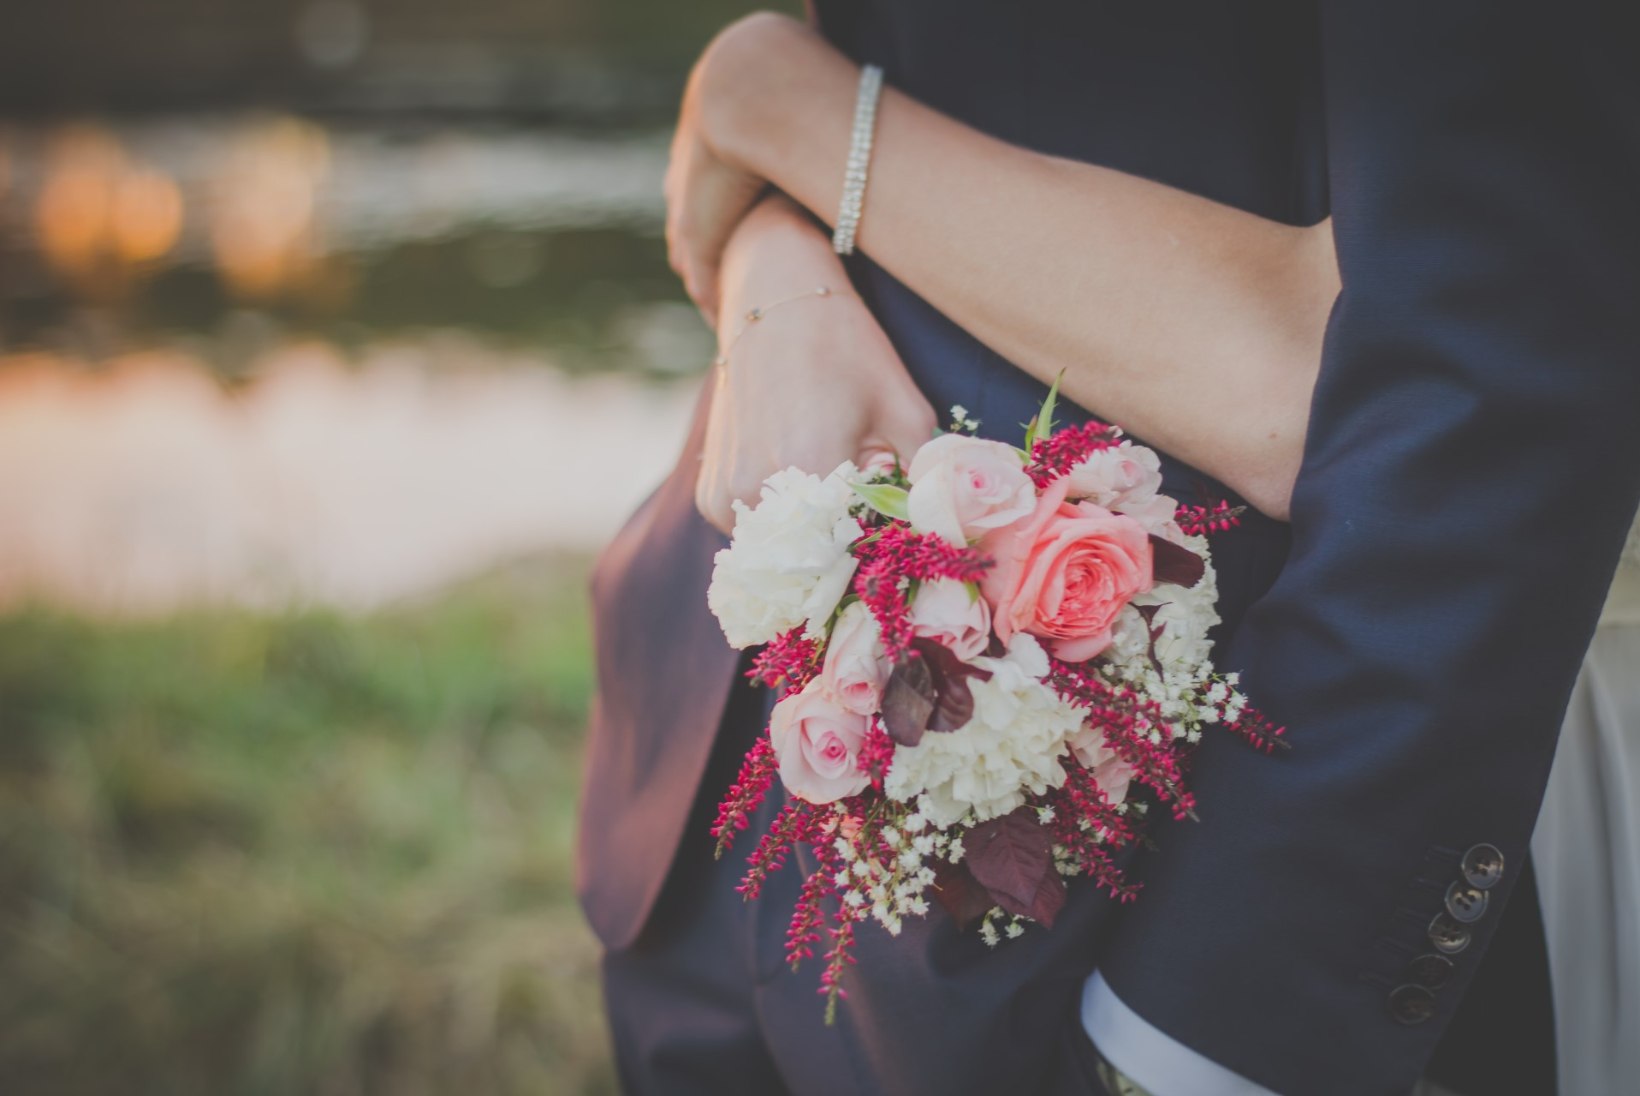 Traditsiooniline abielusõrmus ei ole teile? Siin on 5 alternatiivset ideed!